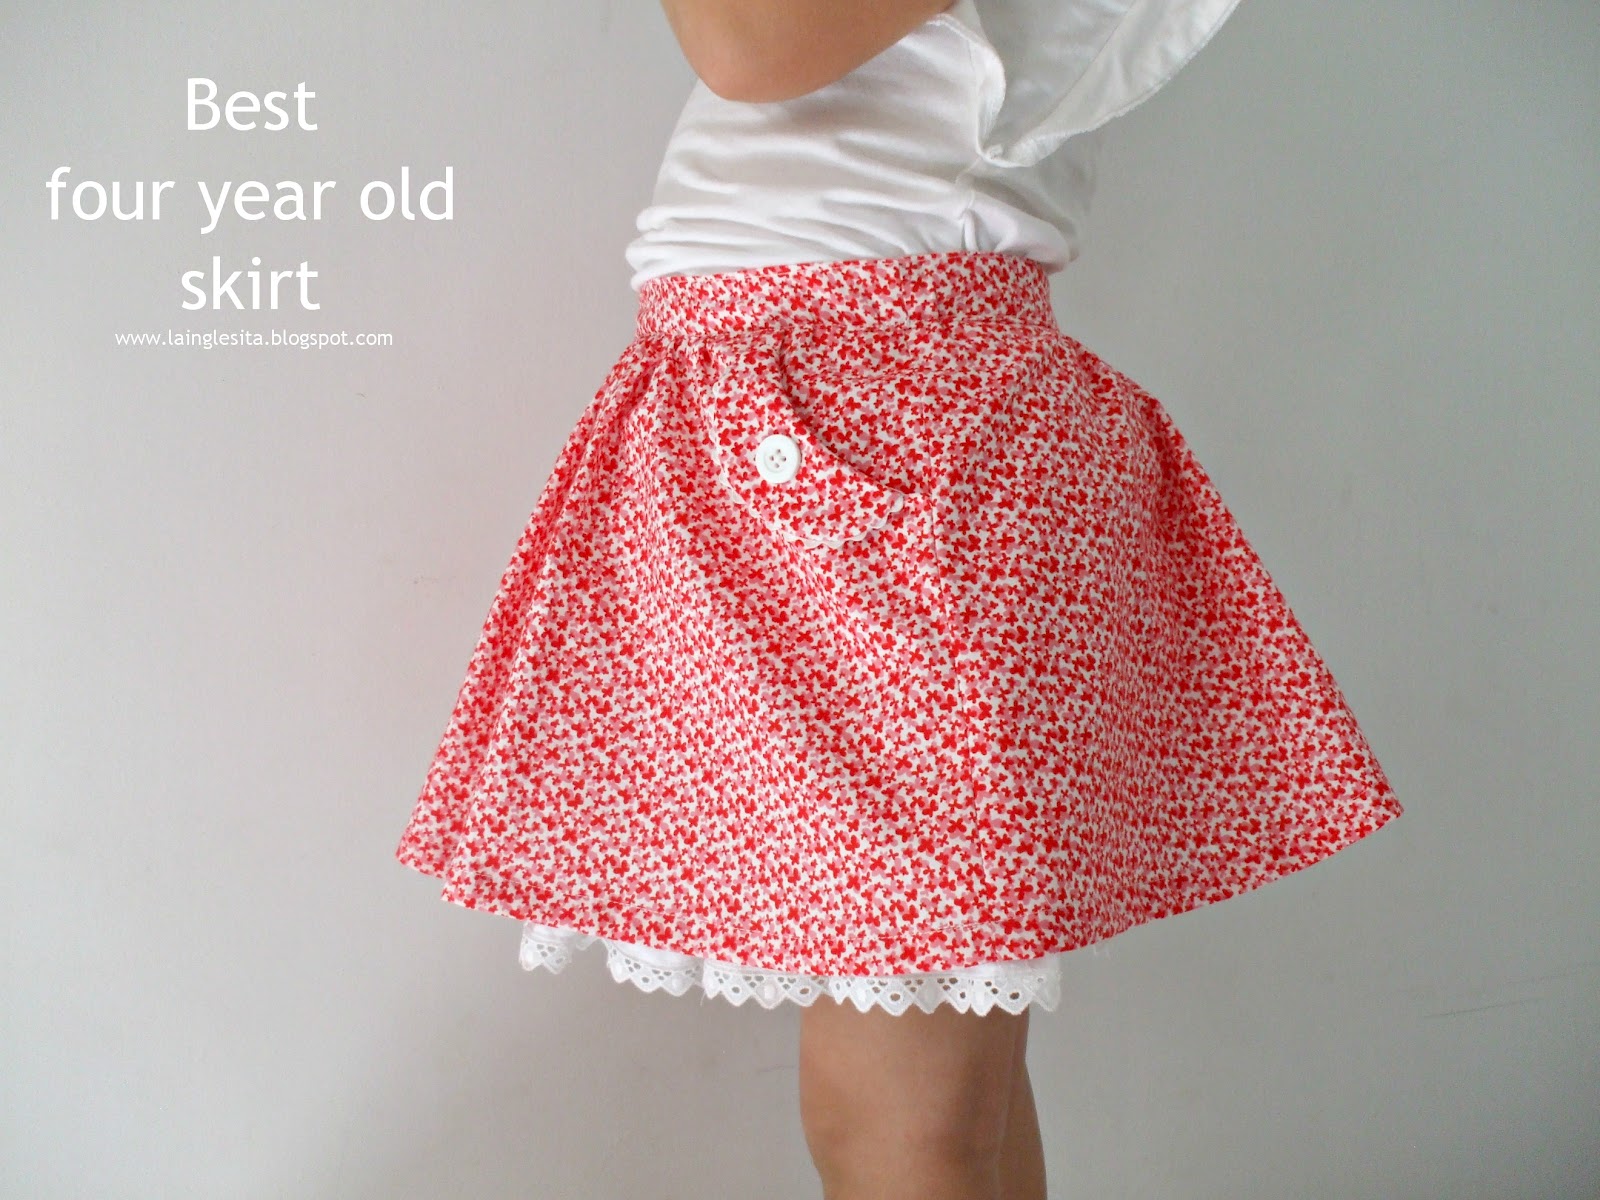 ella es Oferta quemar la inglesita: La mejor falda para cuatroañeras :: Best four year old skirt